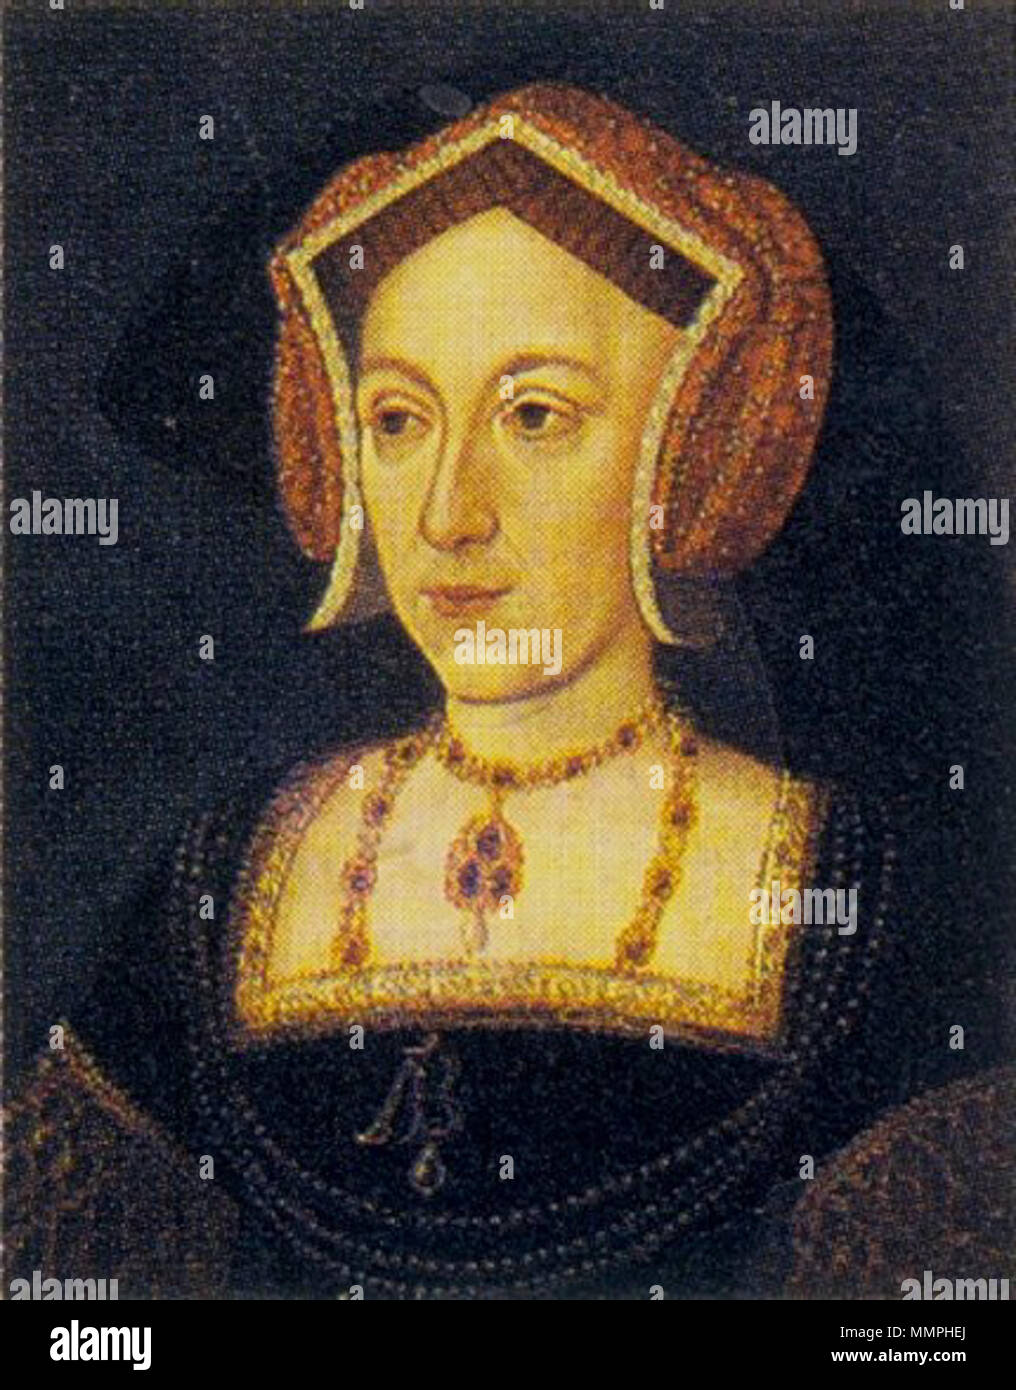 . Inglese: Possibile Ritratto di Anna Bolena a prescindere da una medaglia danneggiato, nessun ritratto contemporaneo di Anne Boleyn è sopravvissuta, forse perché la sua memoria è stato spurgato dopo la sua esecuzione nel 1536. Durante il regno di sua figlia, Elisabetta I, tuttavia, la sua memoria è stato rianimato, e verso la fine del XVI secolo, una moda per gruppi di 're e regine di Inghilterra " ha portato alla pittura di una serie di ritratti di lei, di cui il presente quadro è uno. I ritratti chiaramente derivano da due tradizioni distinte, sebbene come strettamente dalla perdita di originali, se non a tutti, non è noto. Il ritratto più spesso reprod Foto Stock